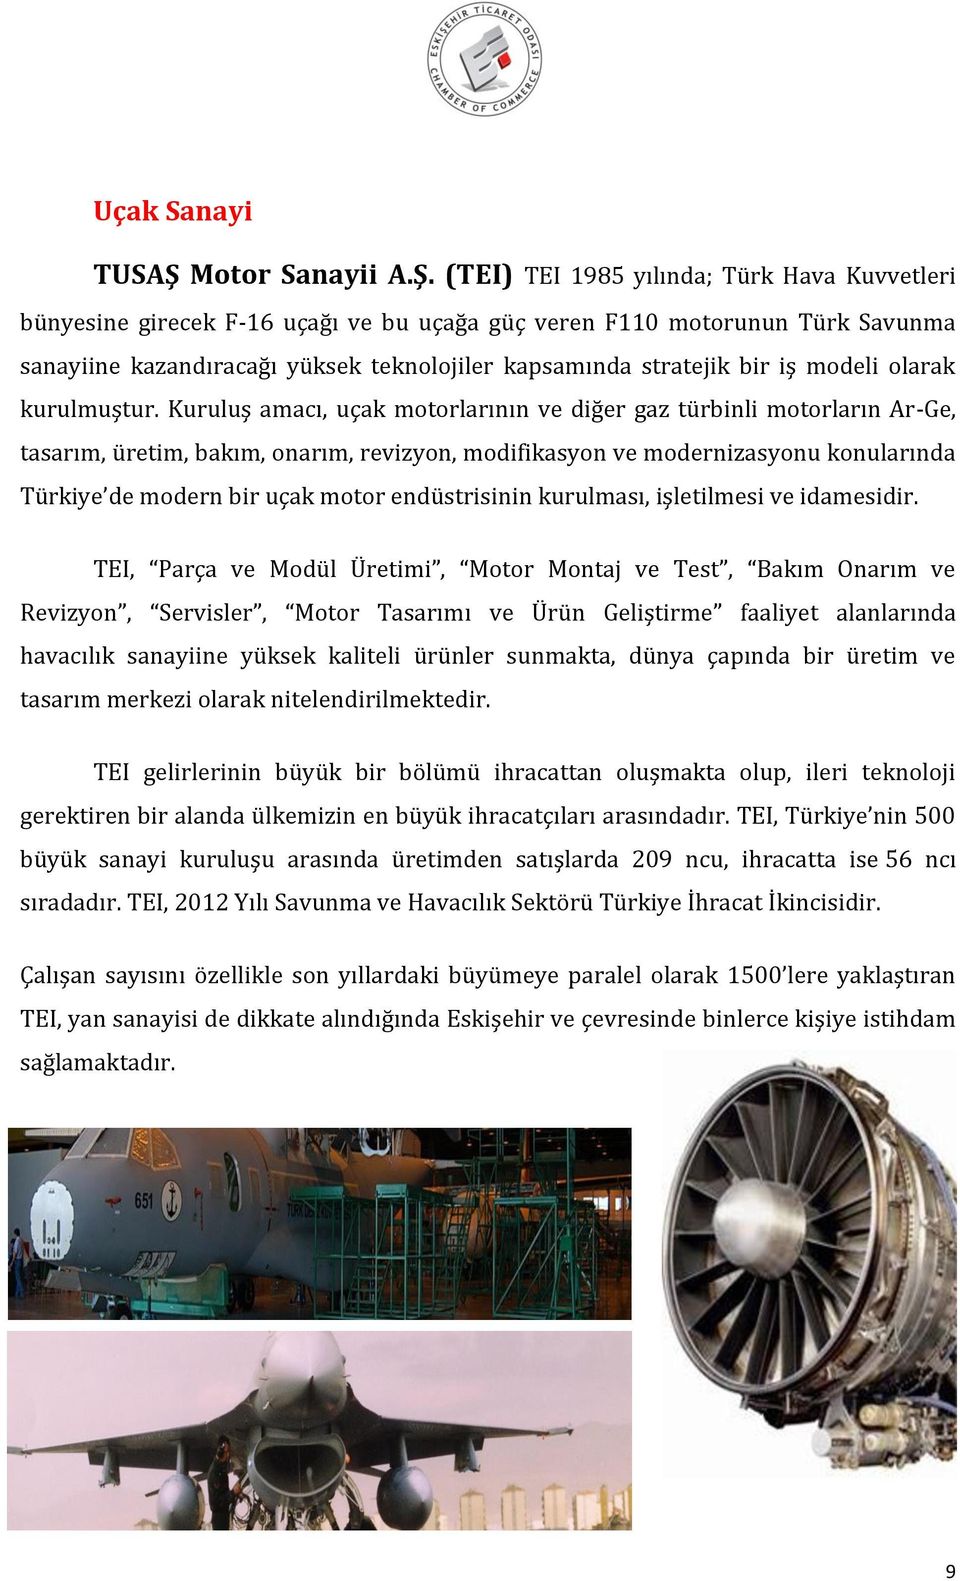 (TEI) TEI 1985 yılında; Türk Hava Kuvvetleri bünyesine girecek F-16 uçağı ve bu uçağa güç veren F110 motorunun Türk Savunma sanayiine kazandıracağı yüksek teknolojiler kapsamında stratejik bir iş